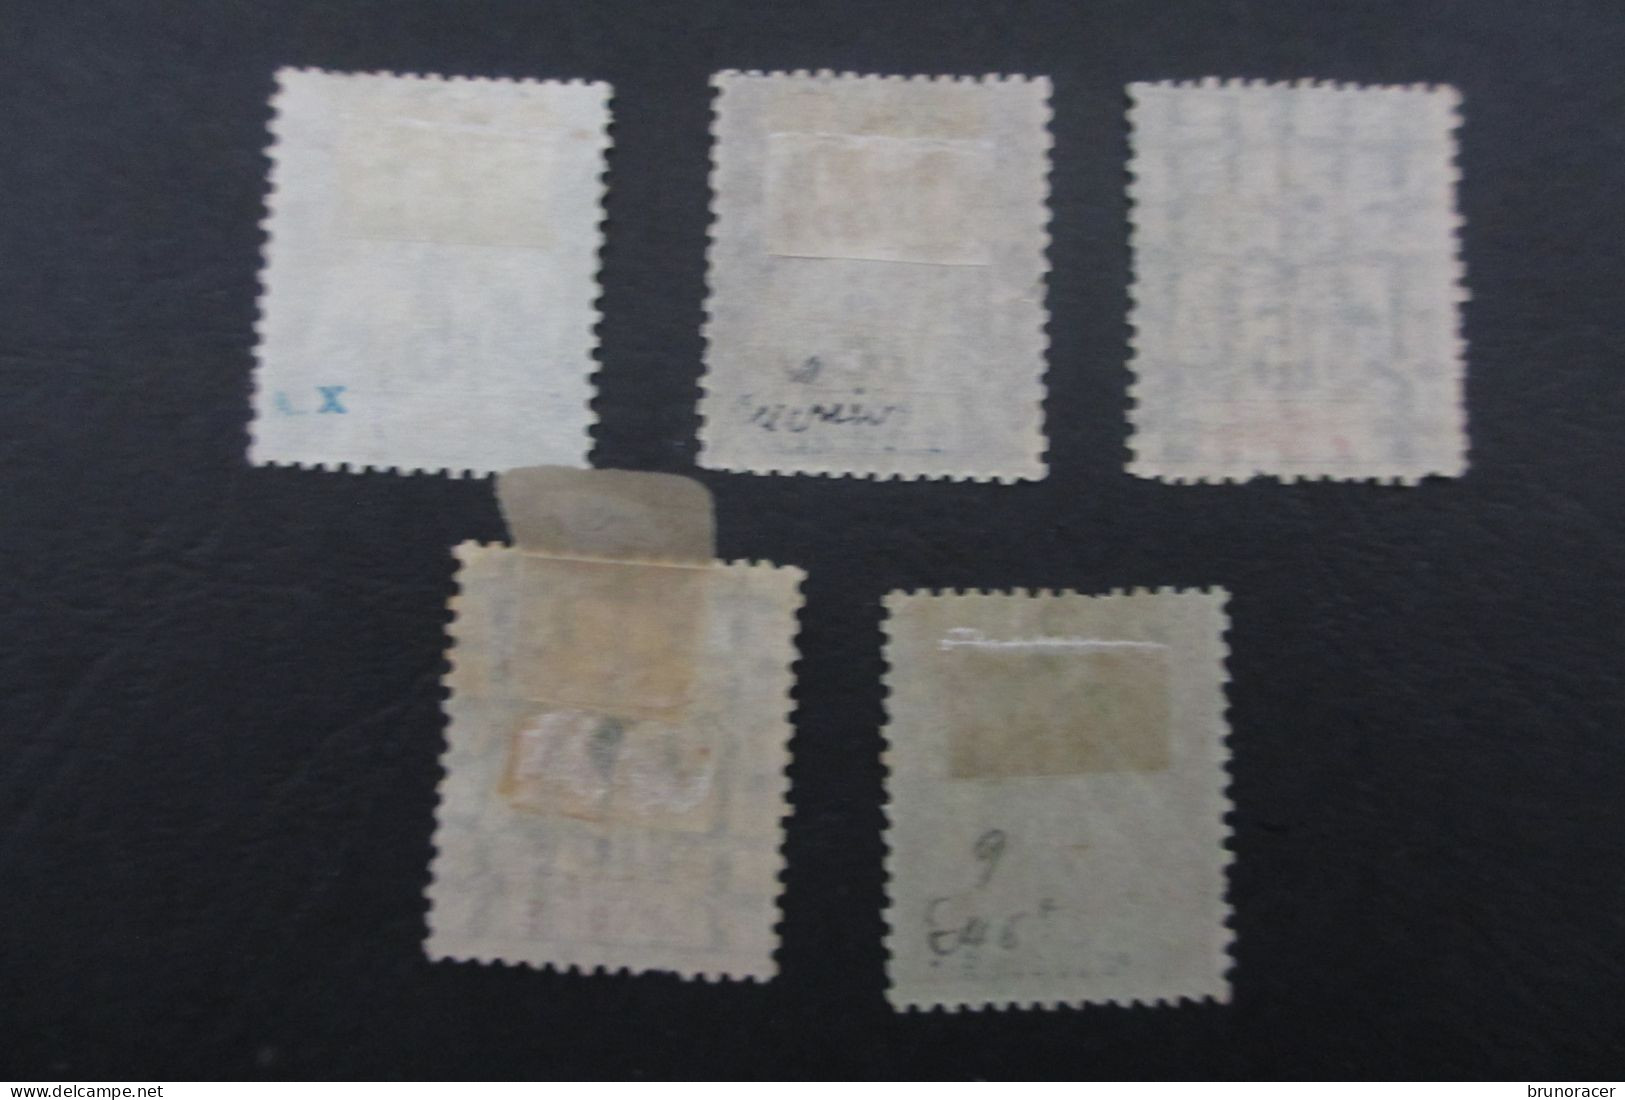 COTE D'IVOIRE TYPE LOT GROUPE N°4 à 7 Oblit. TBCOTE 88 EUROS VOIR SCANS - Used Stamps